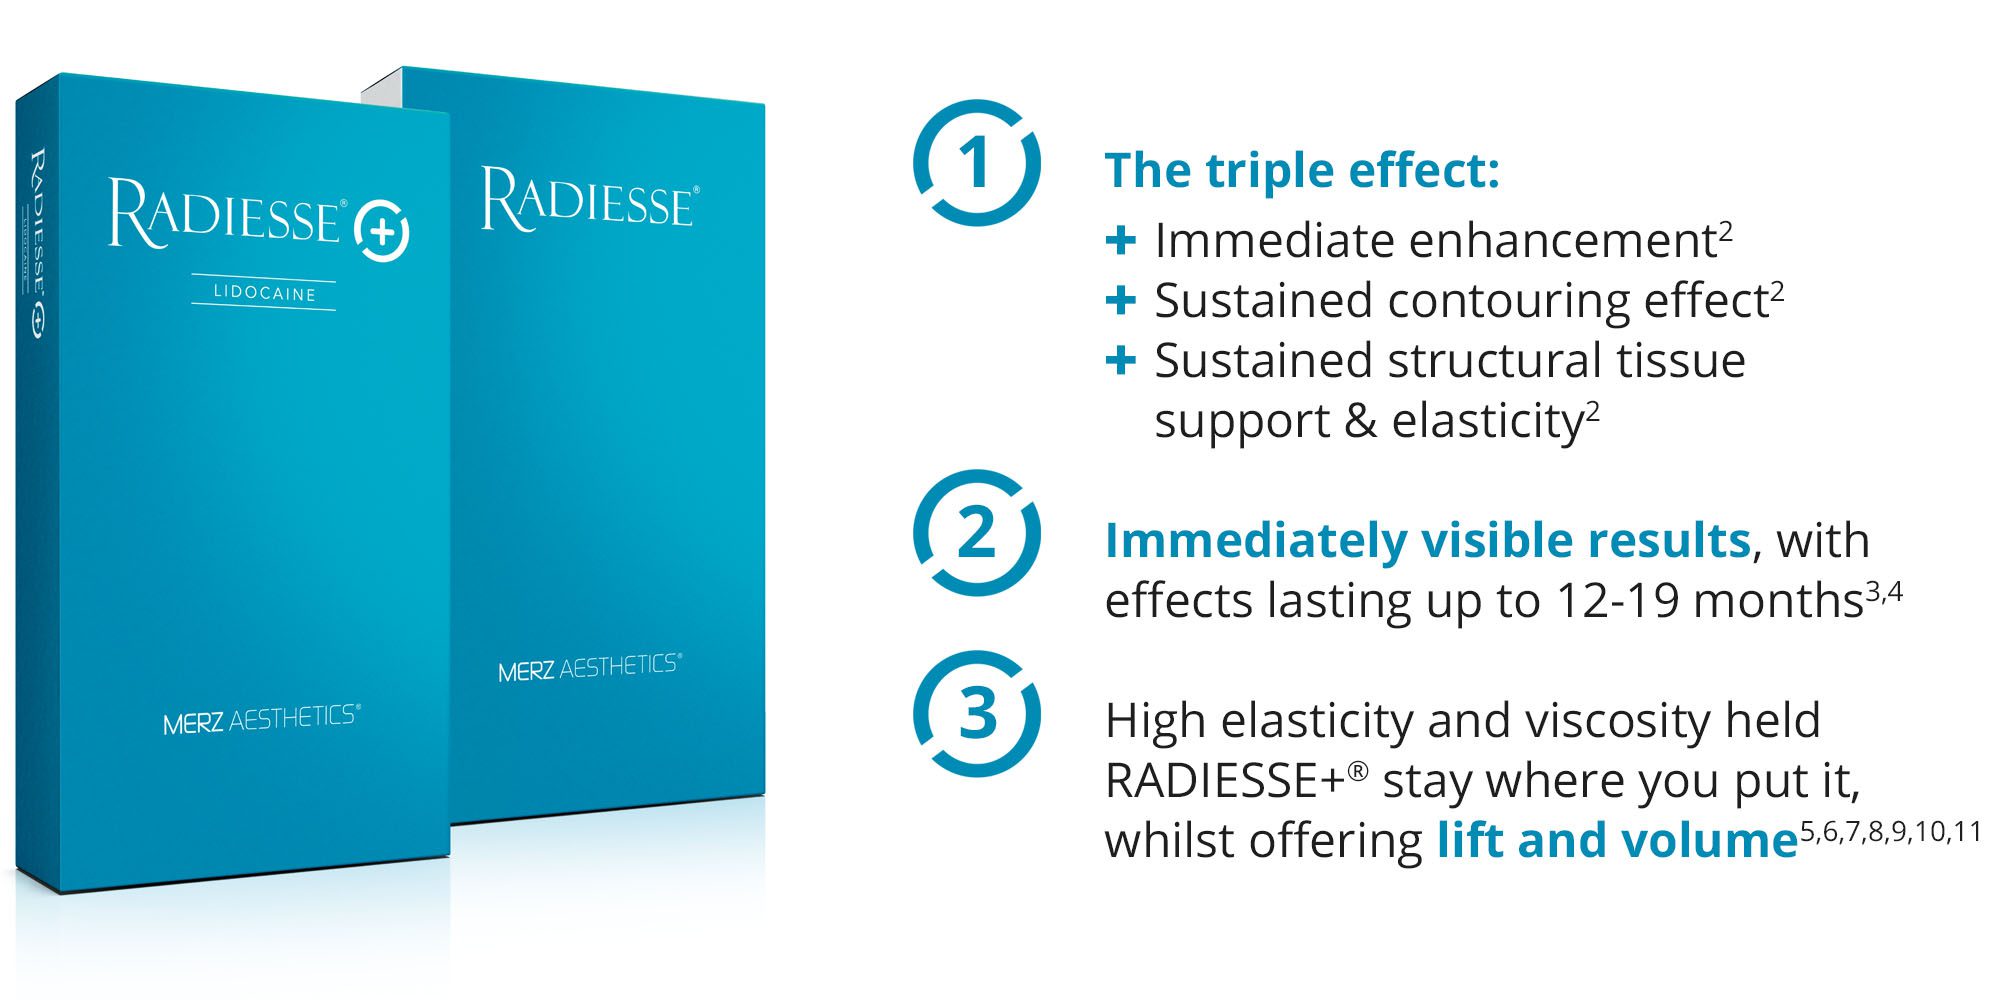 Radiesse - Merz Aesthetics